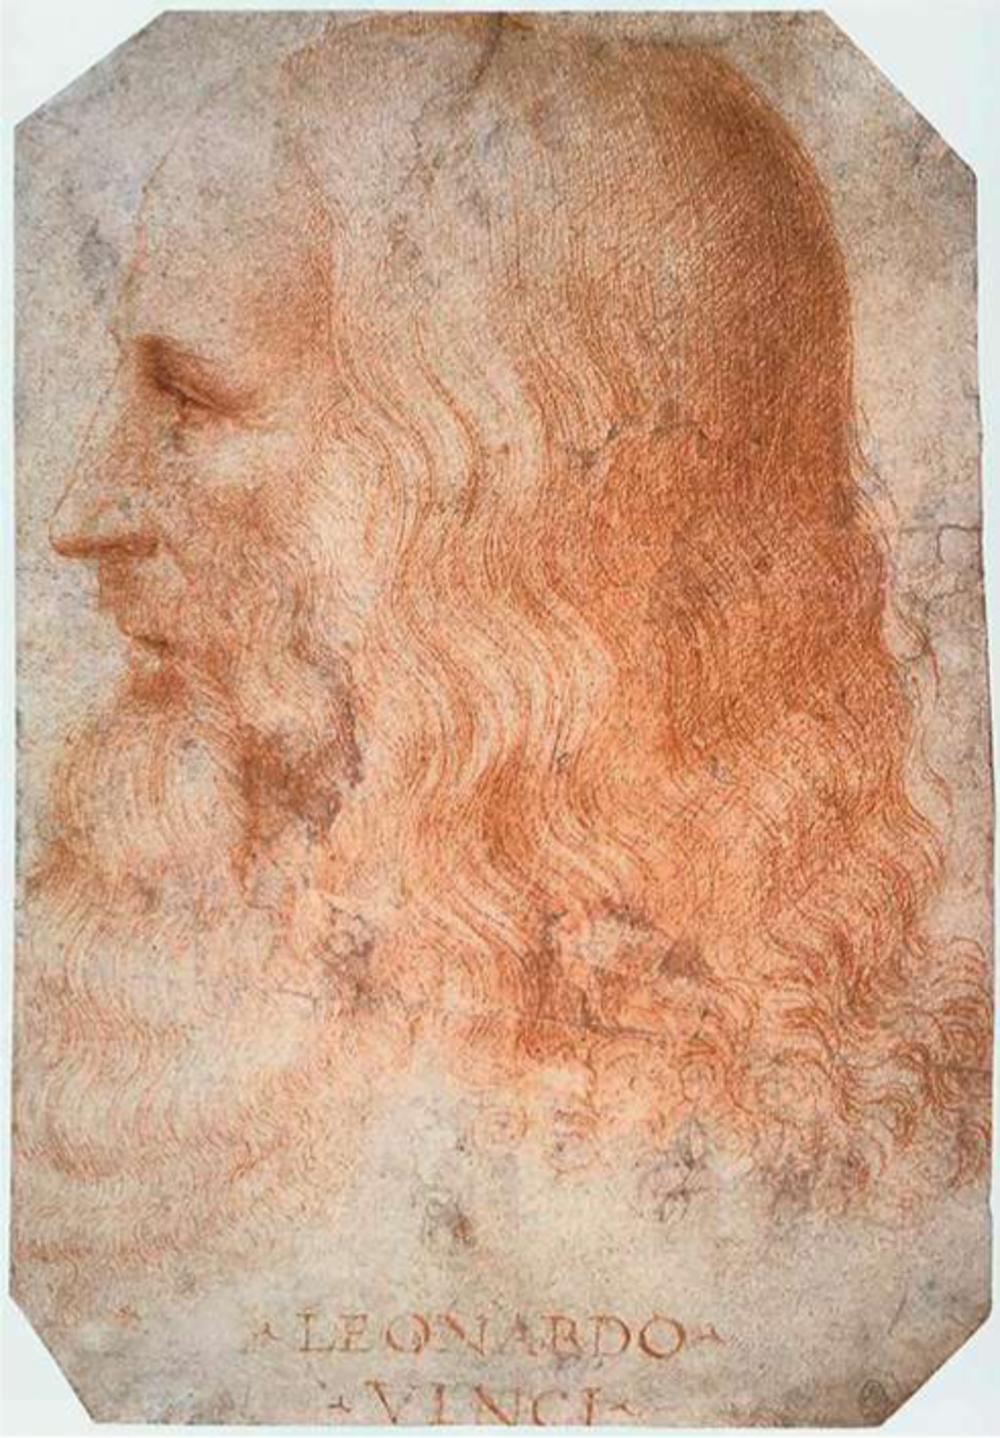 Vermoedelijk zelfportret van Da Vinci.